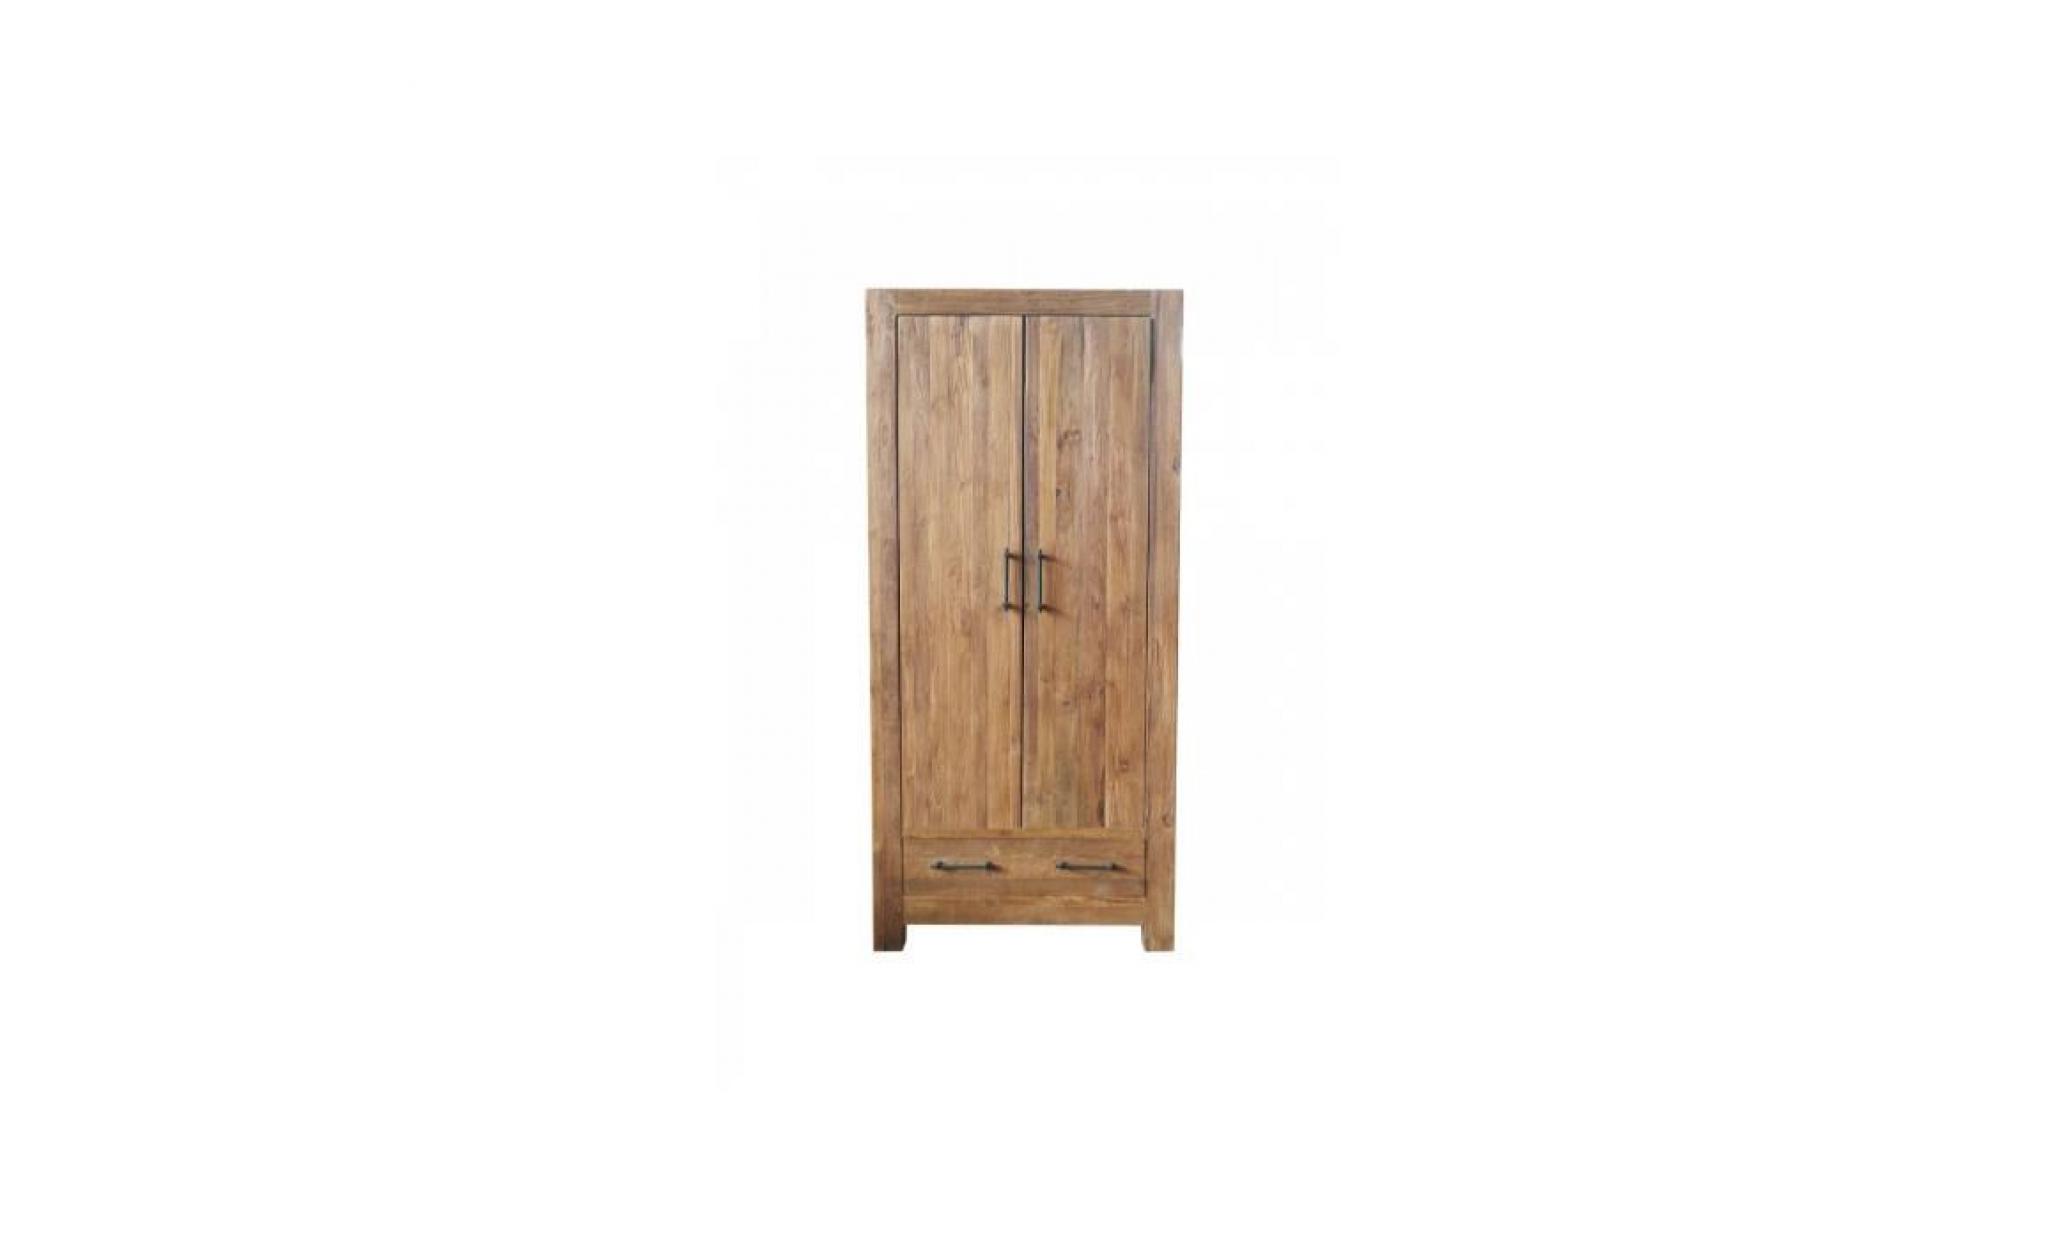 armoire rustique 210 cm à 2 portes et 1 tiroir en bois de teck massif coloris naturel p 46466 co c ville chêne pas cher